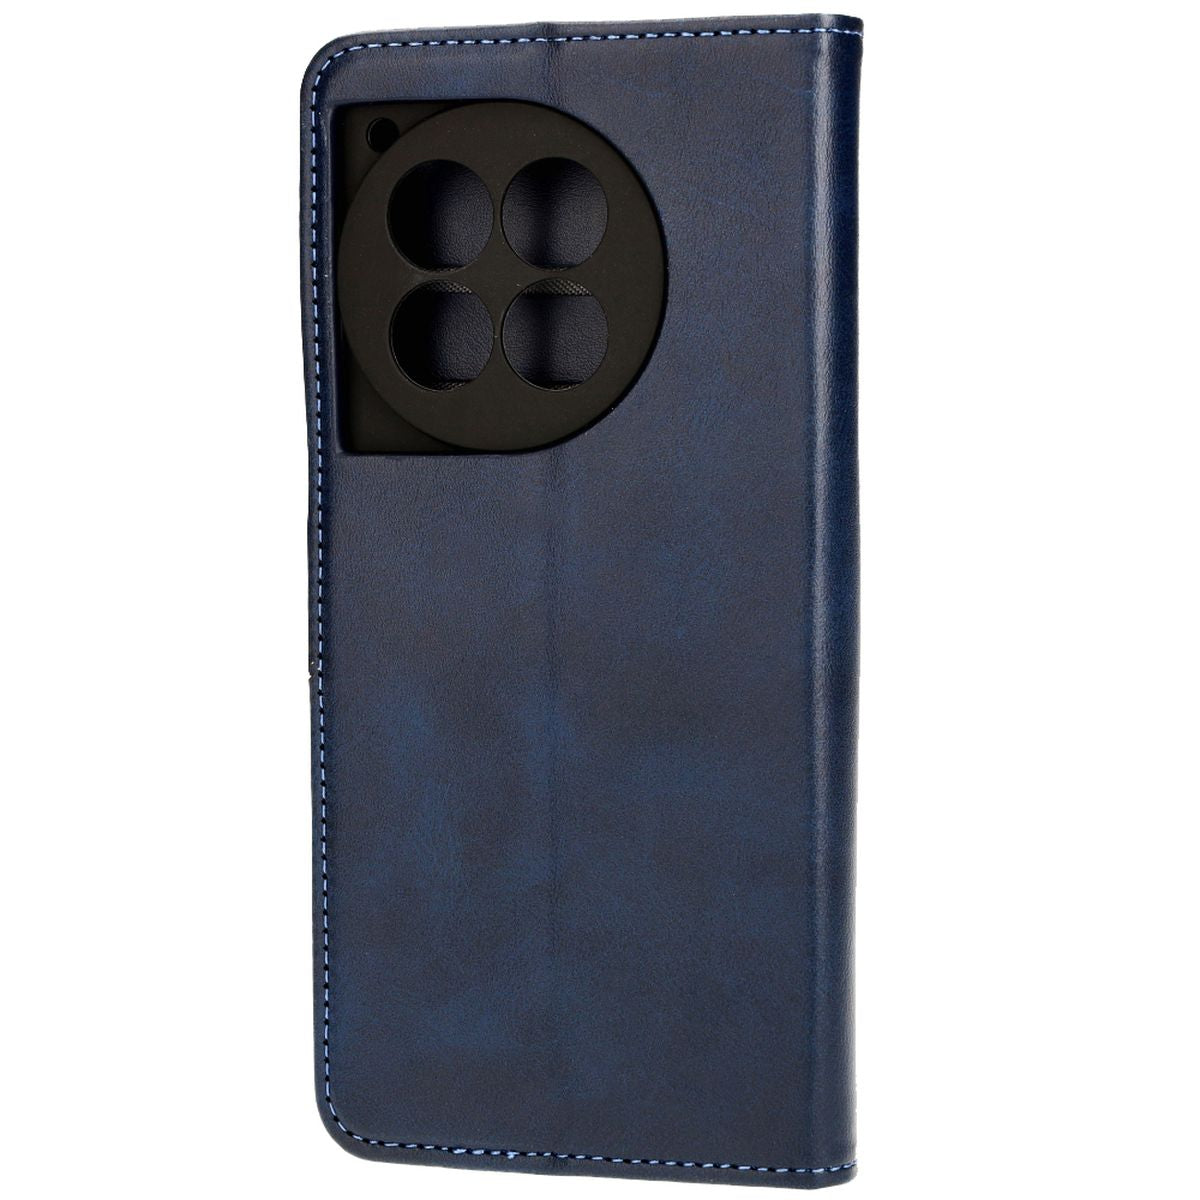 Schutzhülle für OnePlus 12R, Bizon Case Pocket, Dunkelblau